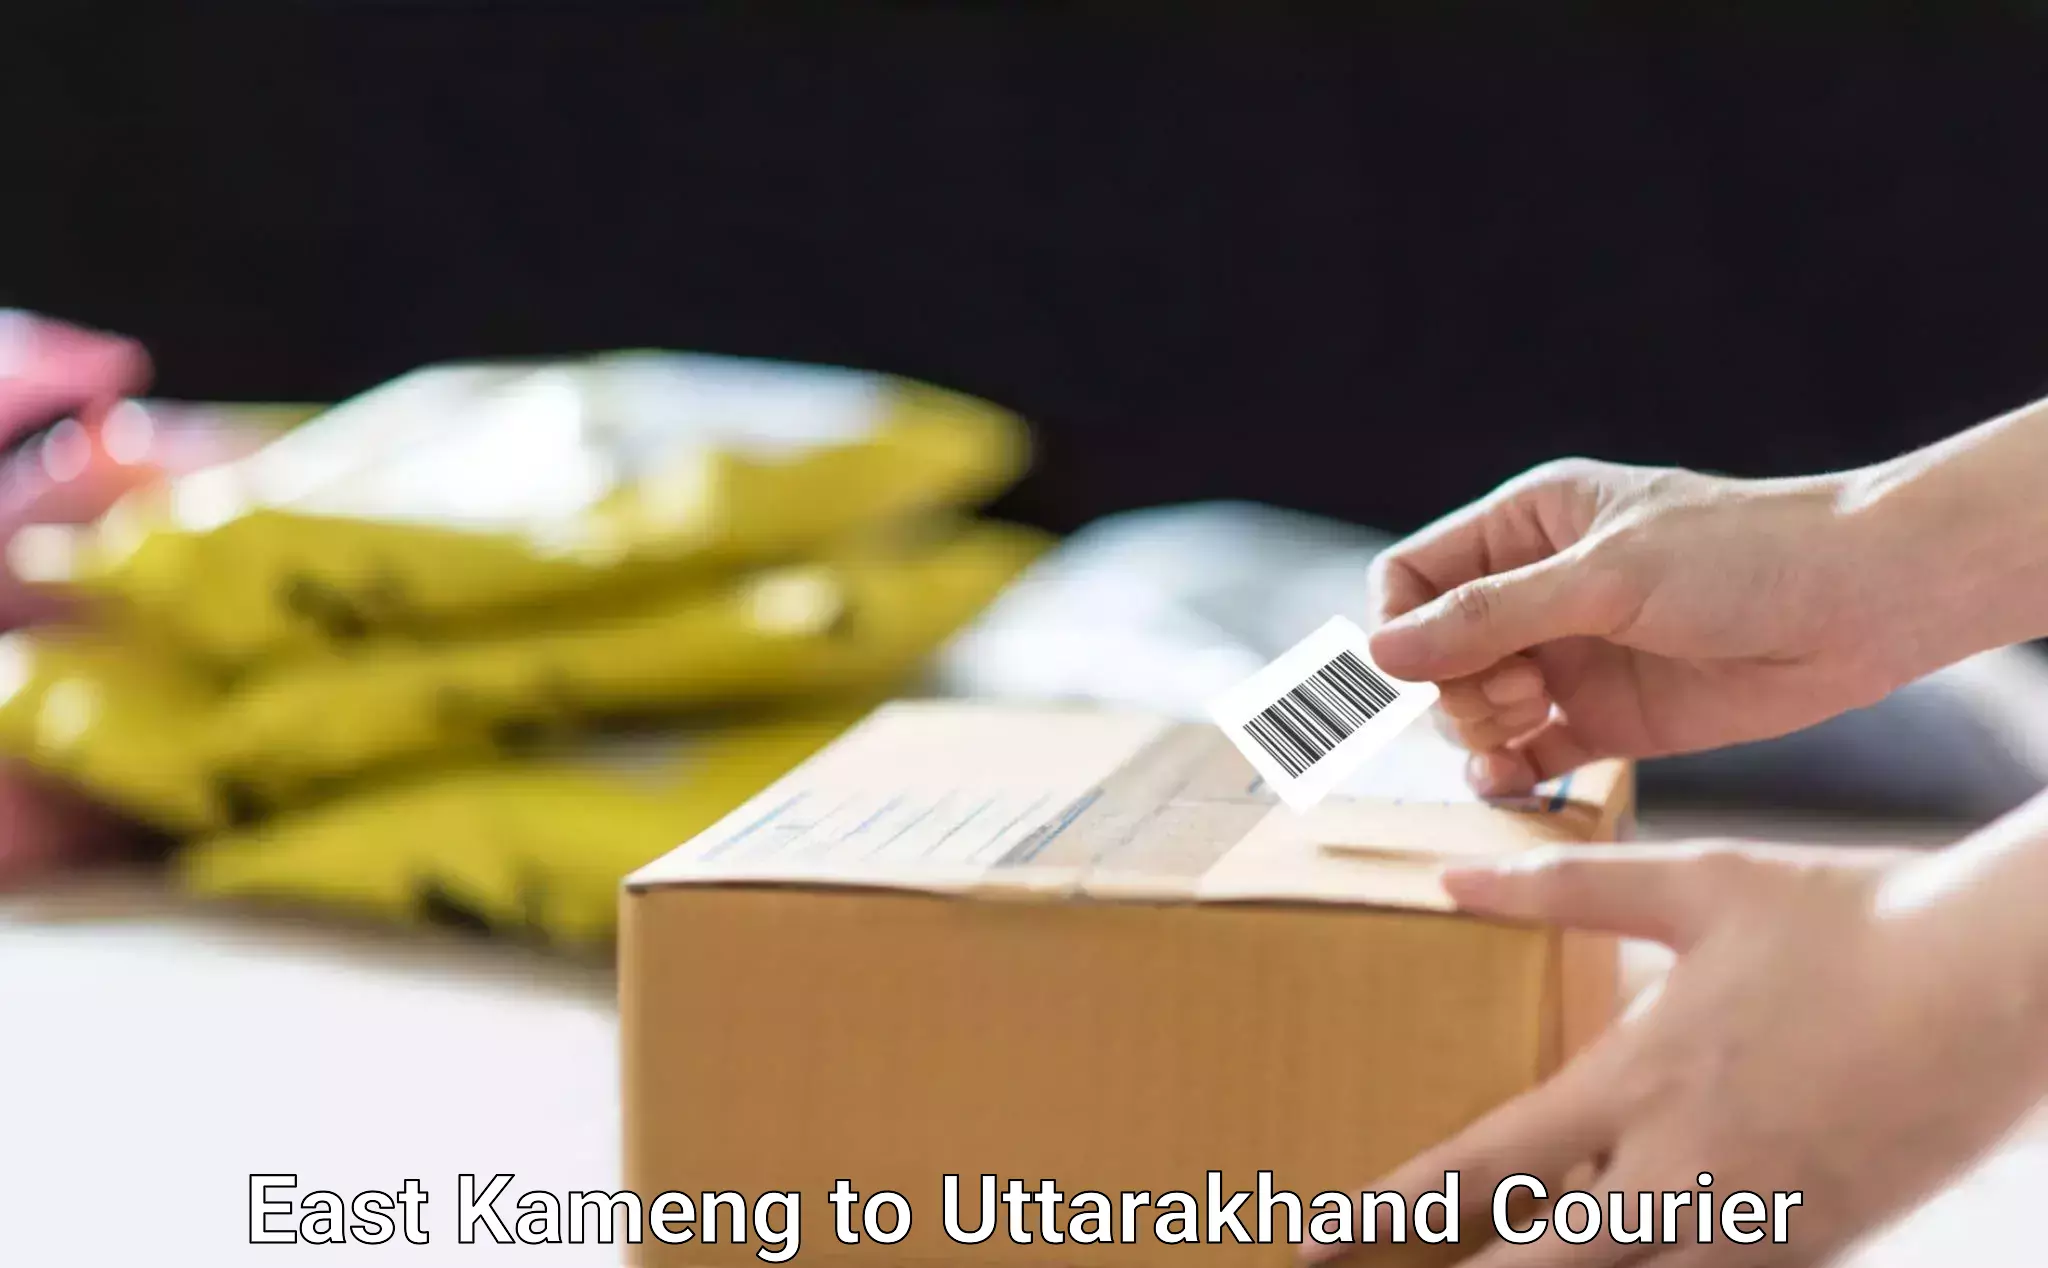 Cash on delivery service East Kameng to Uttarakhand